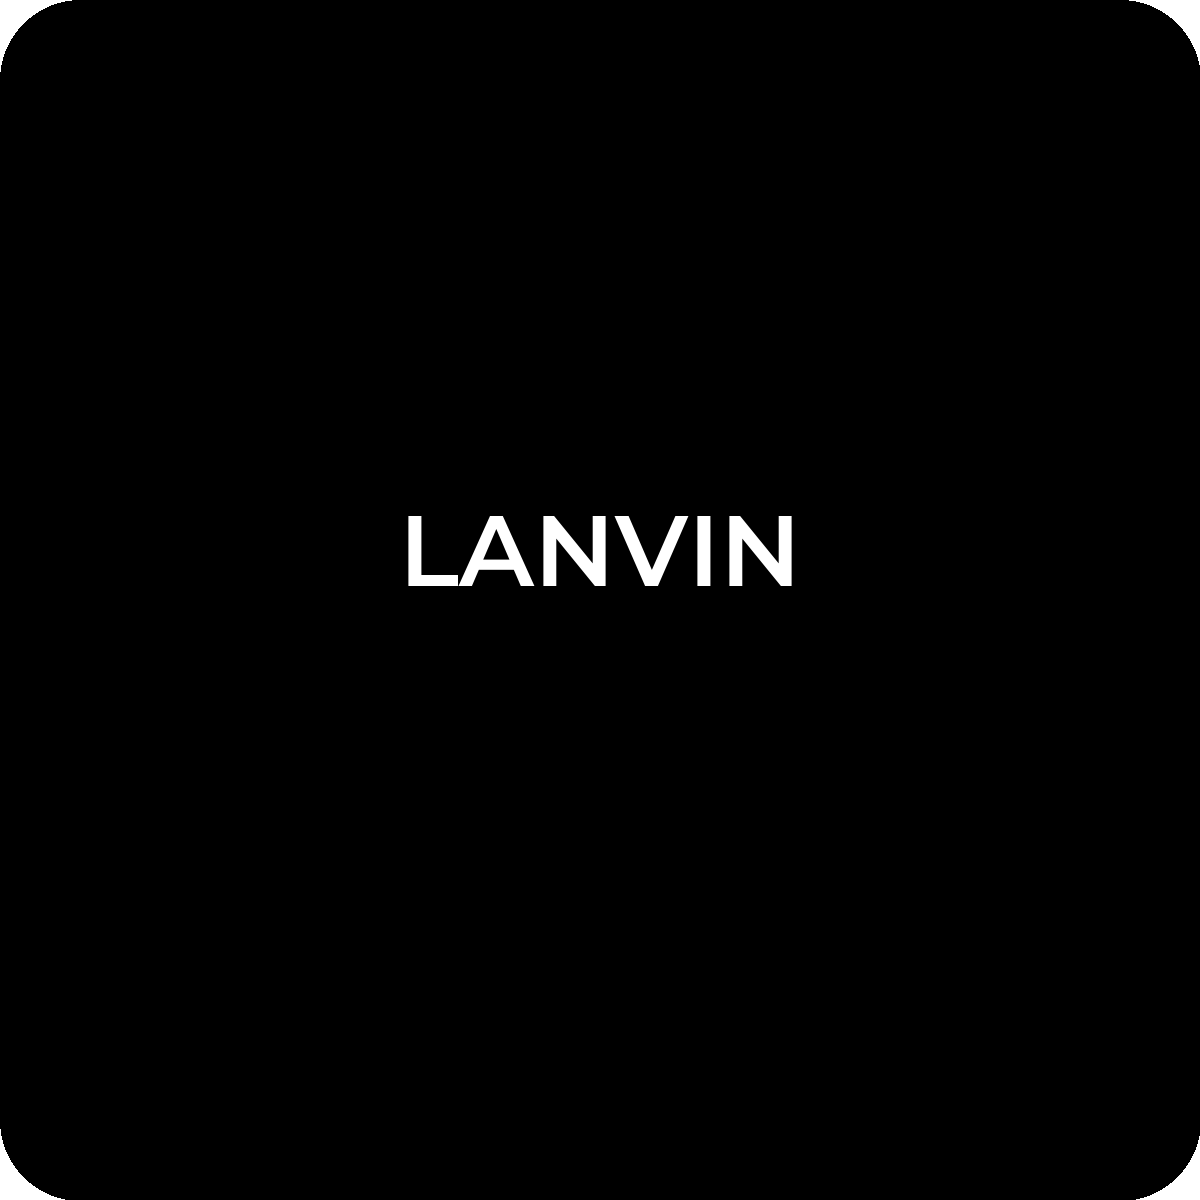 LANVIN Legit Check and Authentication Service – LegitGrails